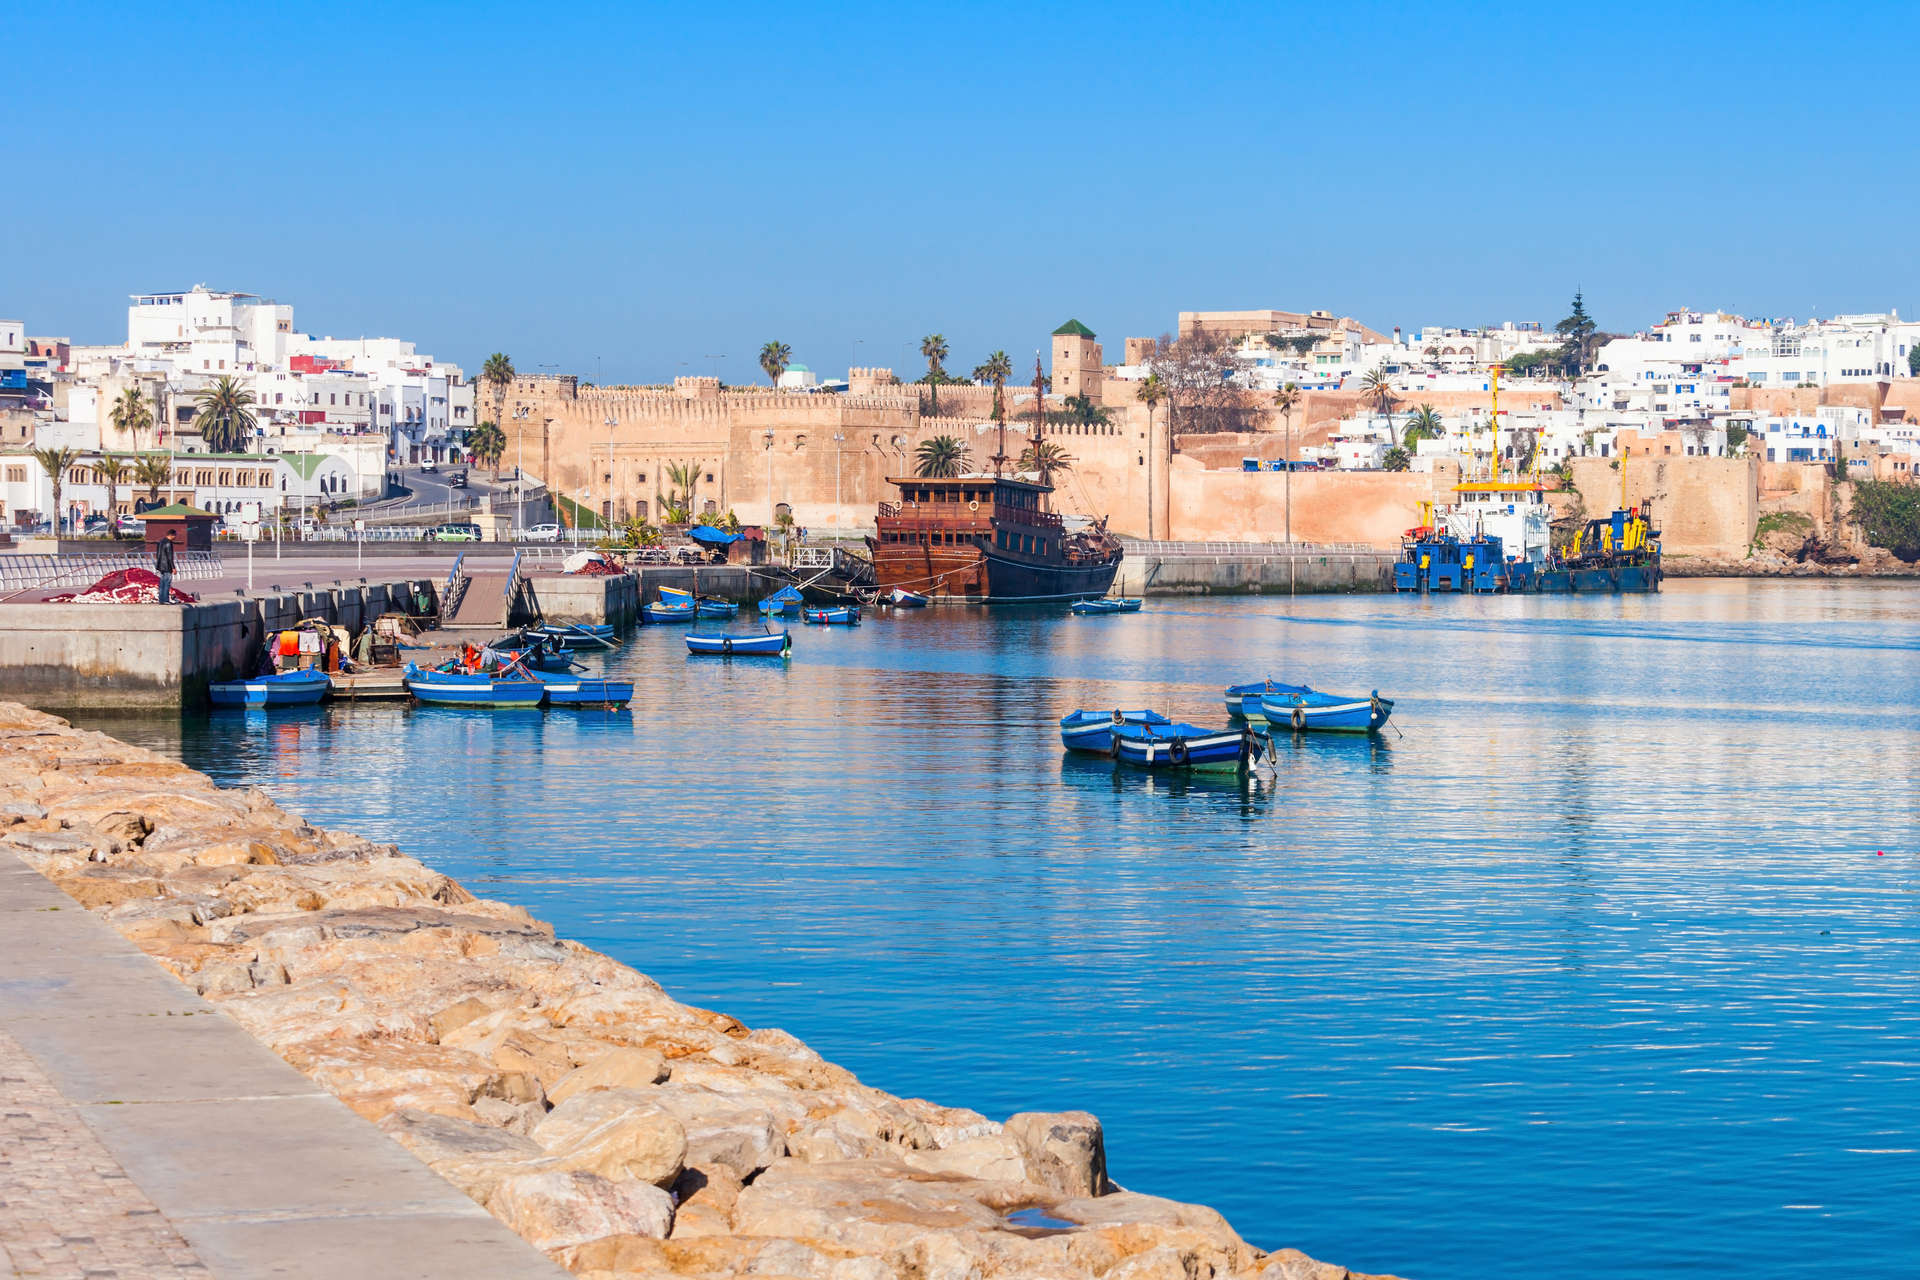 Le port de Rabat, la capitale du Maroc